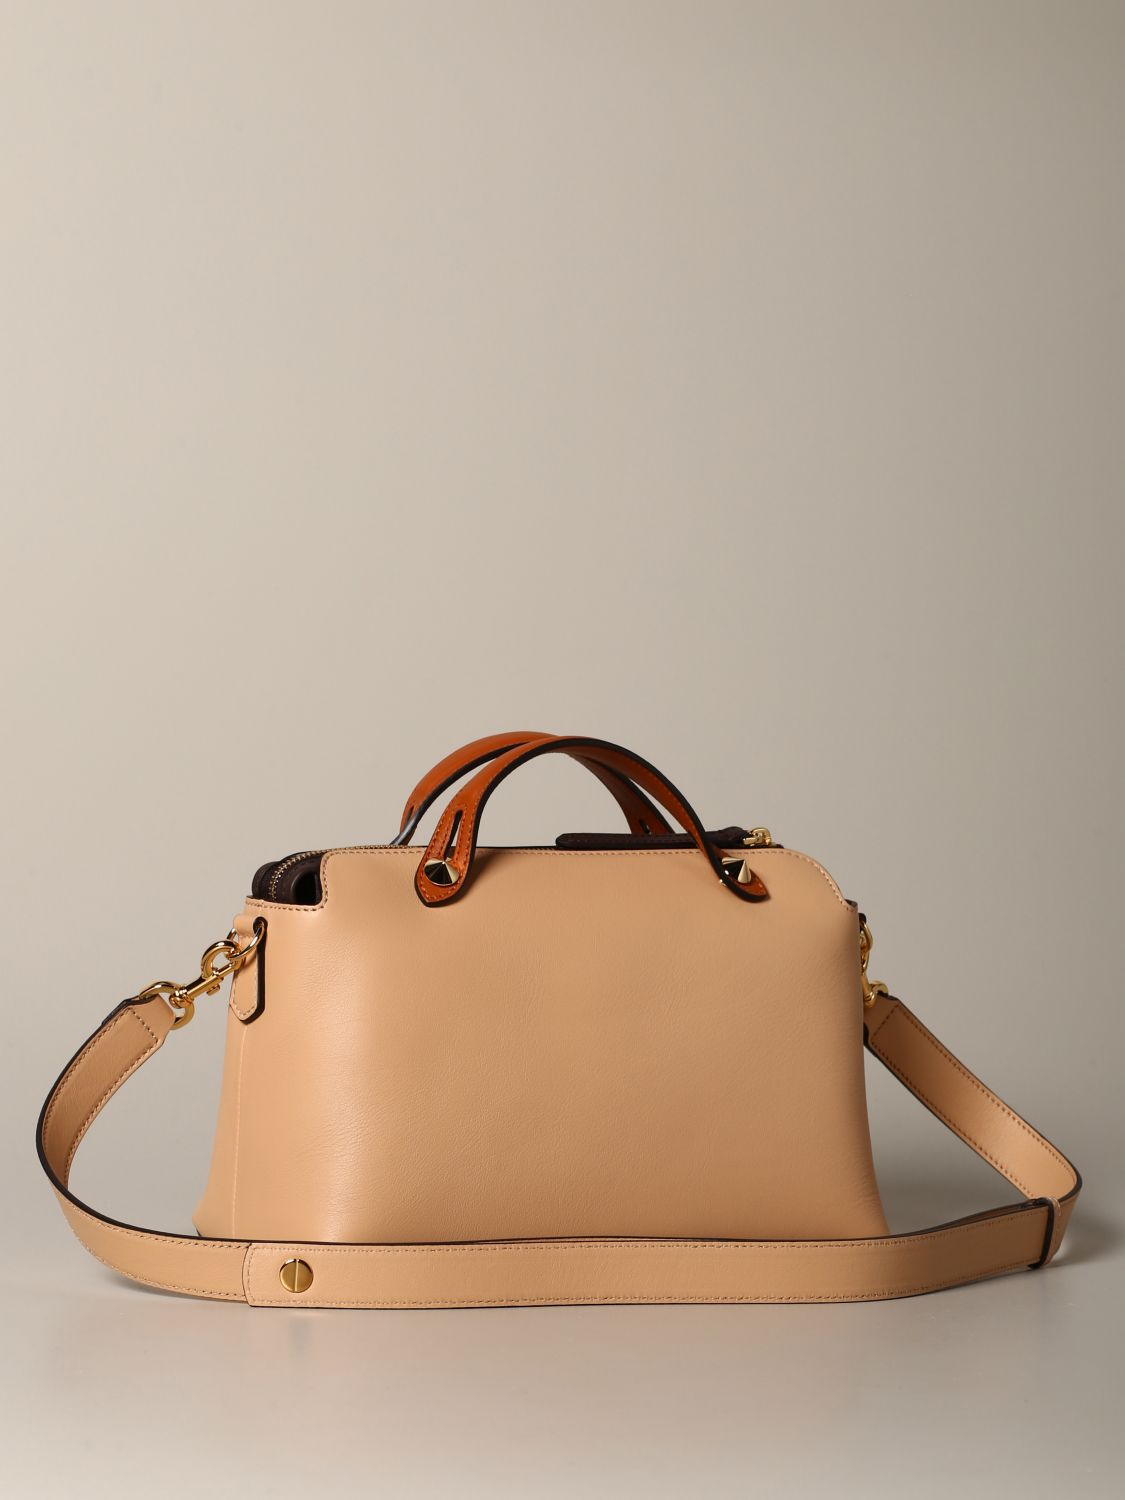 Fendi Outlet: bag in fabric and leather - Brown  Fendi shoulder bag  7VA589AMAH online at